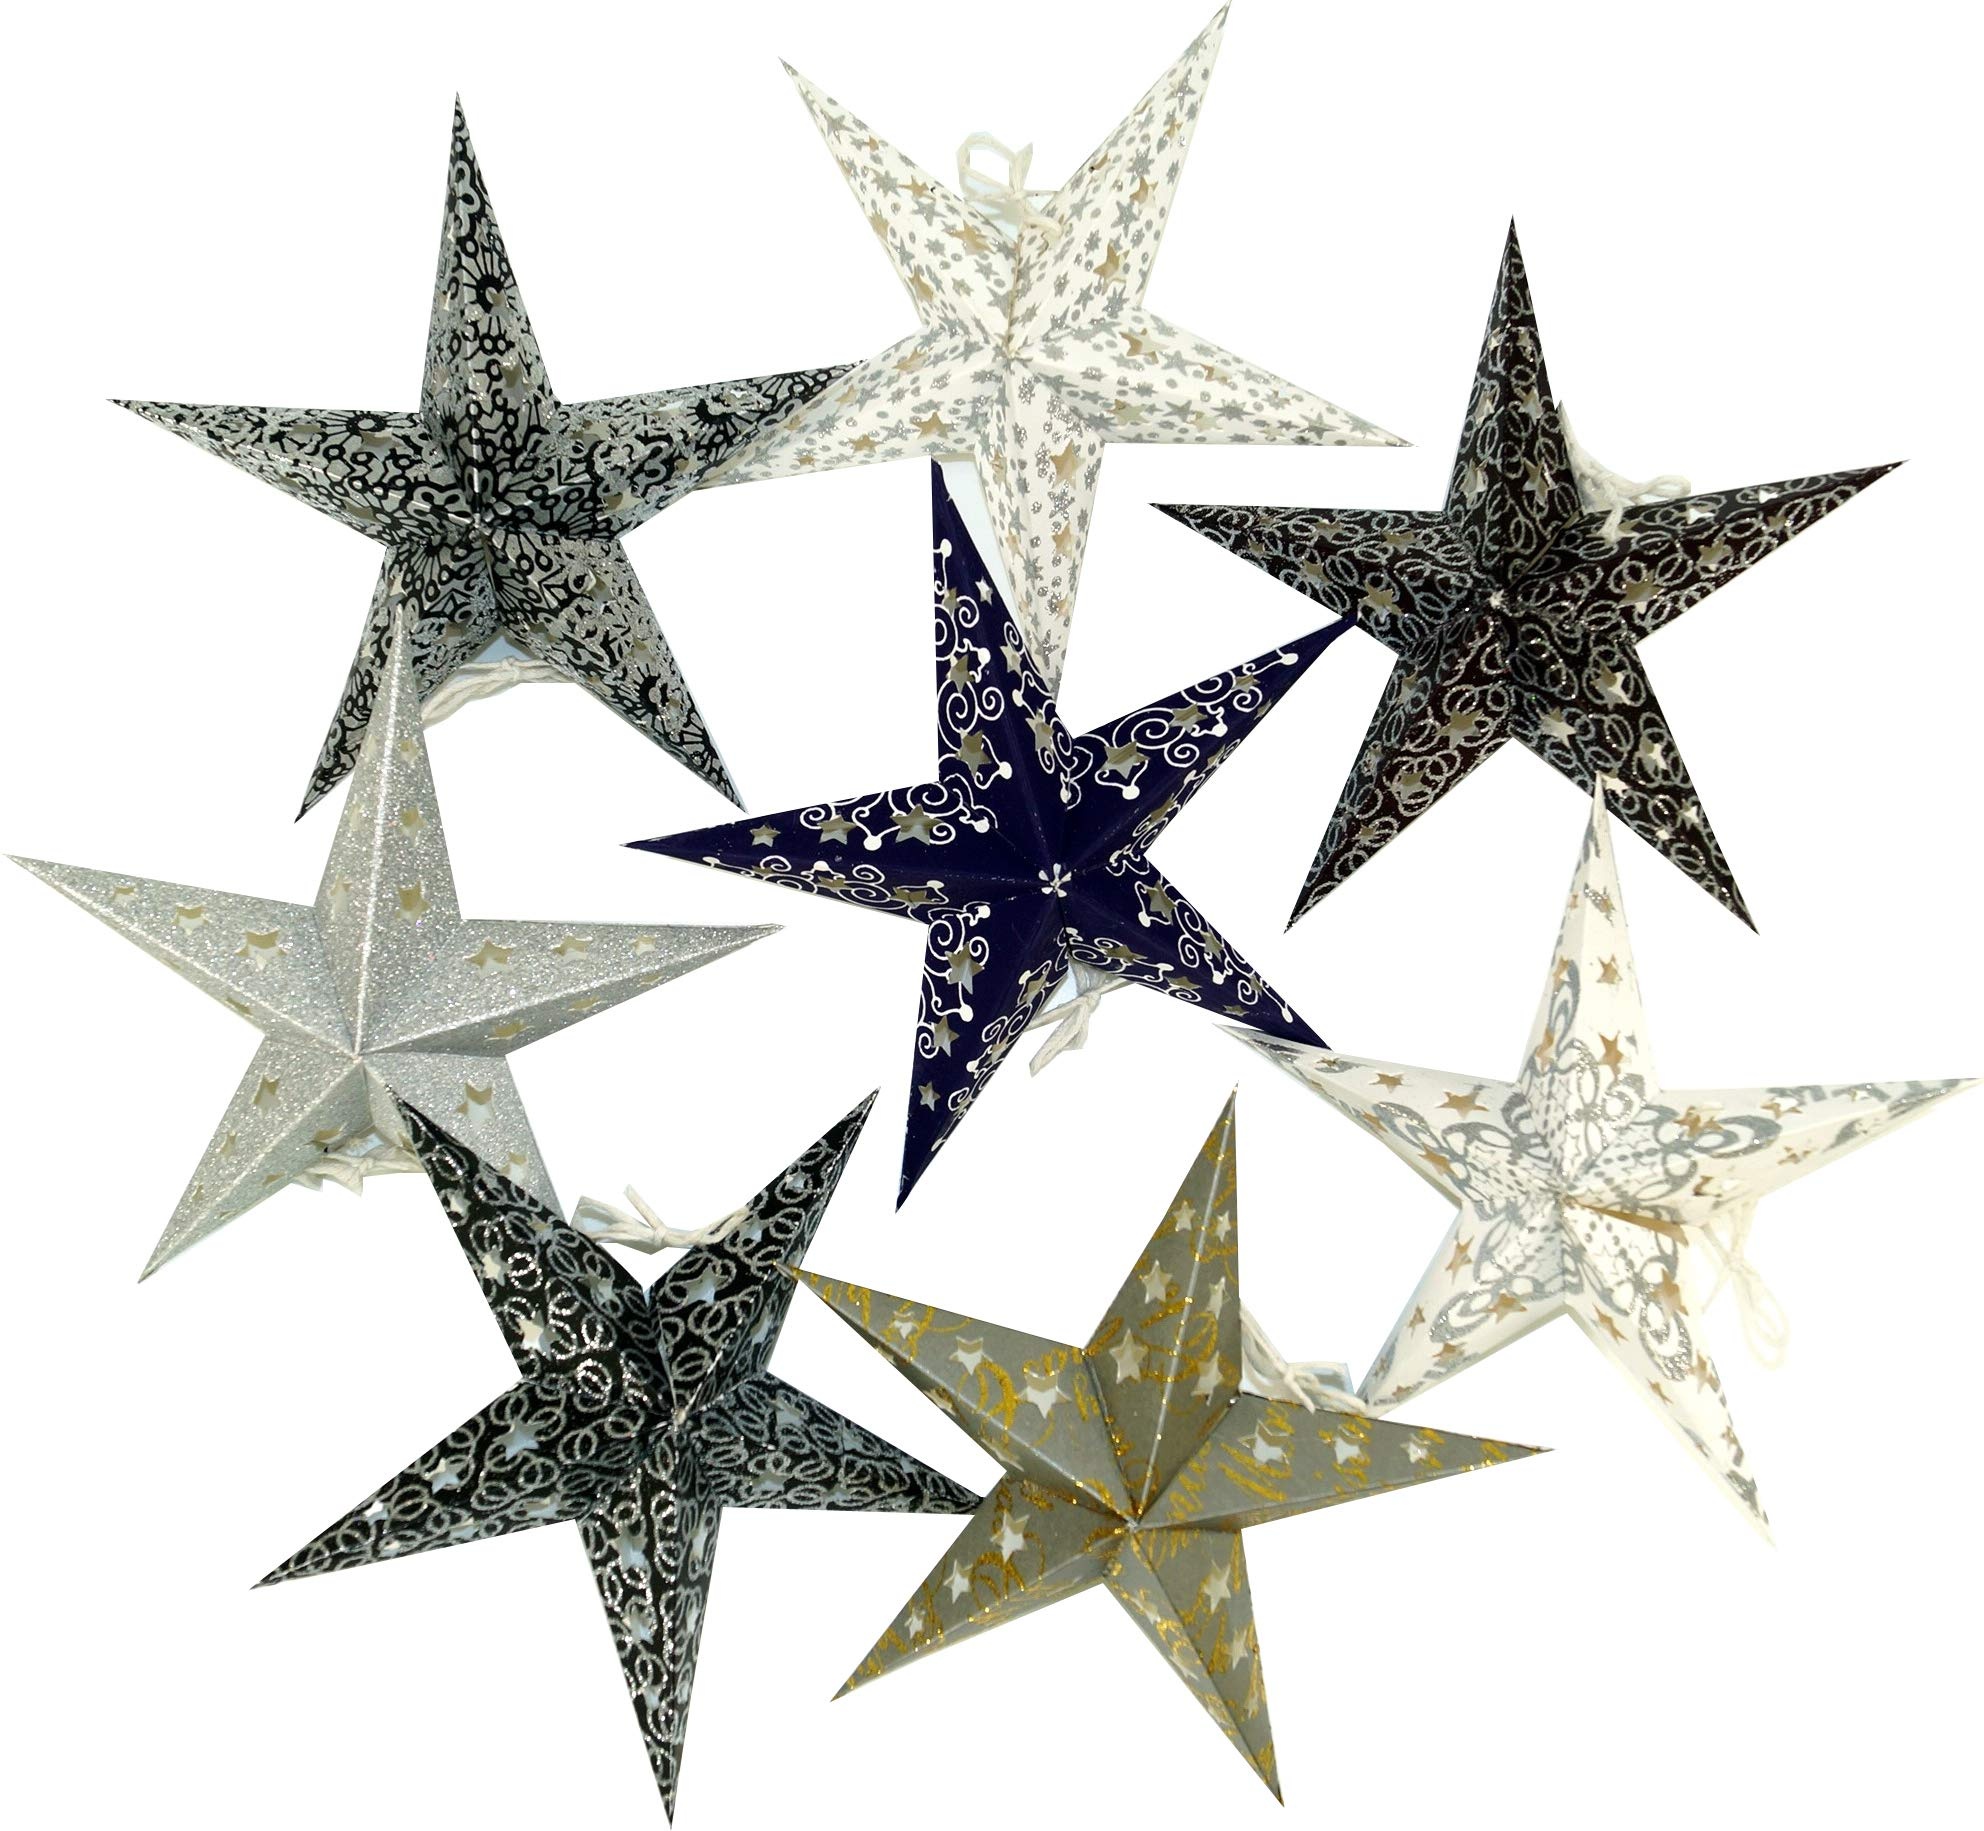 GURU SHOP 8 Stk. Stern für Lichterkette, Papier Ministern 20 cm Set, Faltbar - Schwarz/weiß/grau/glitter, Papiersterne 20 cm für Lichterketten